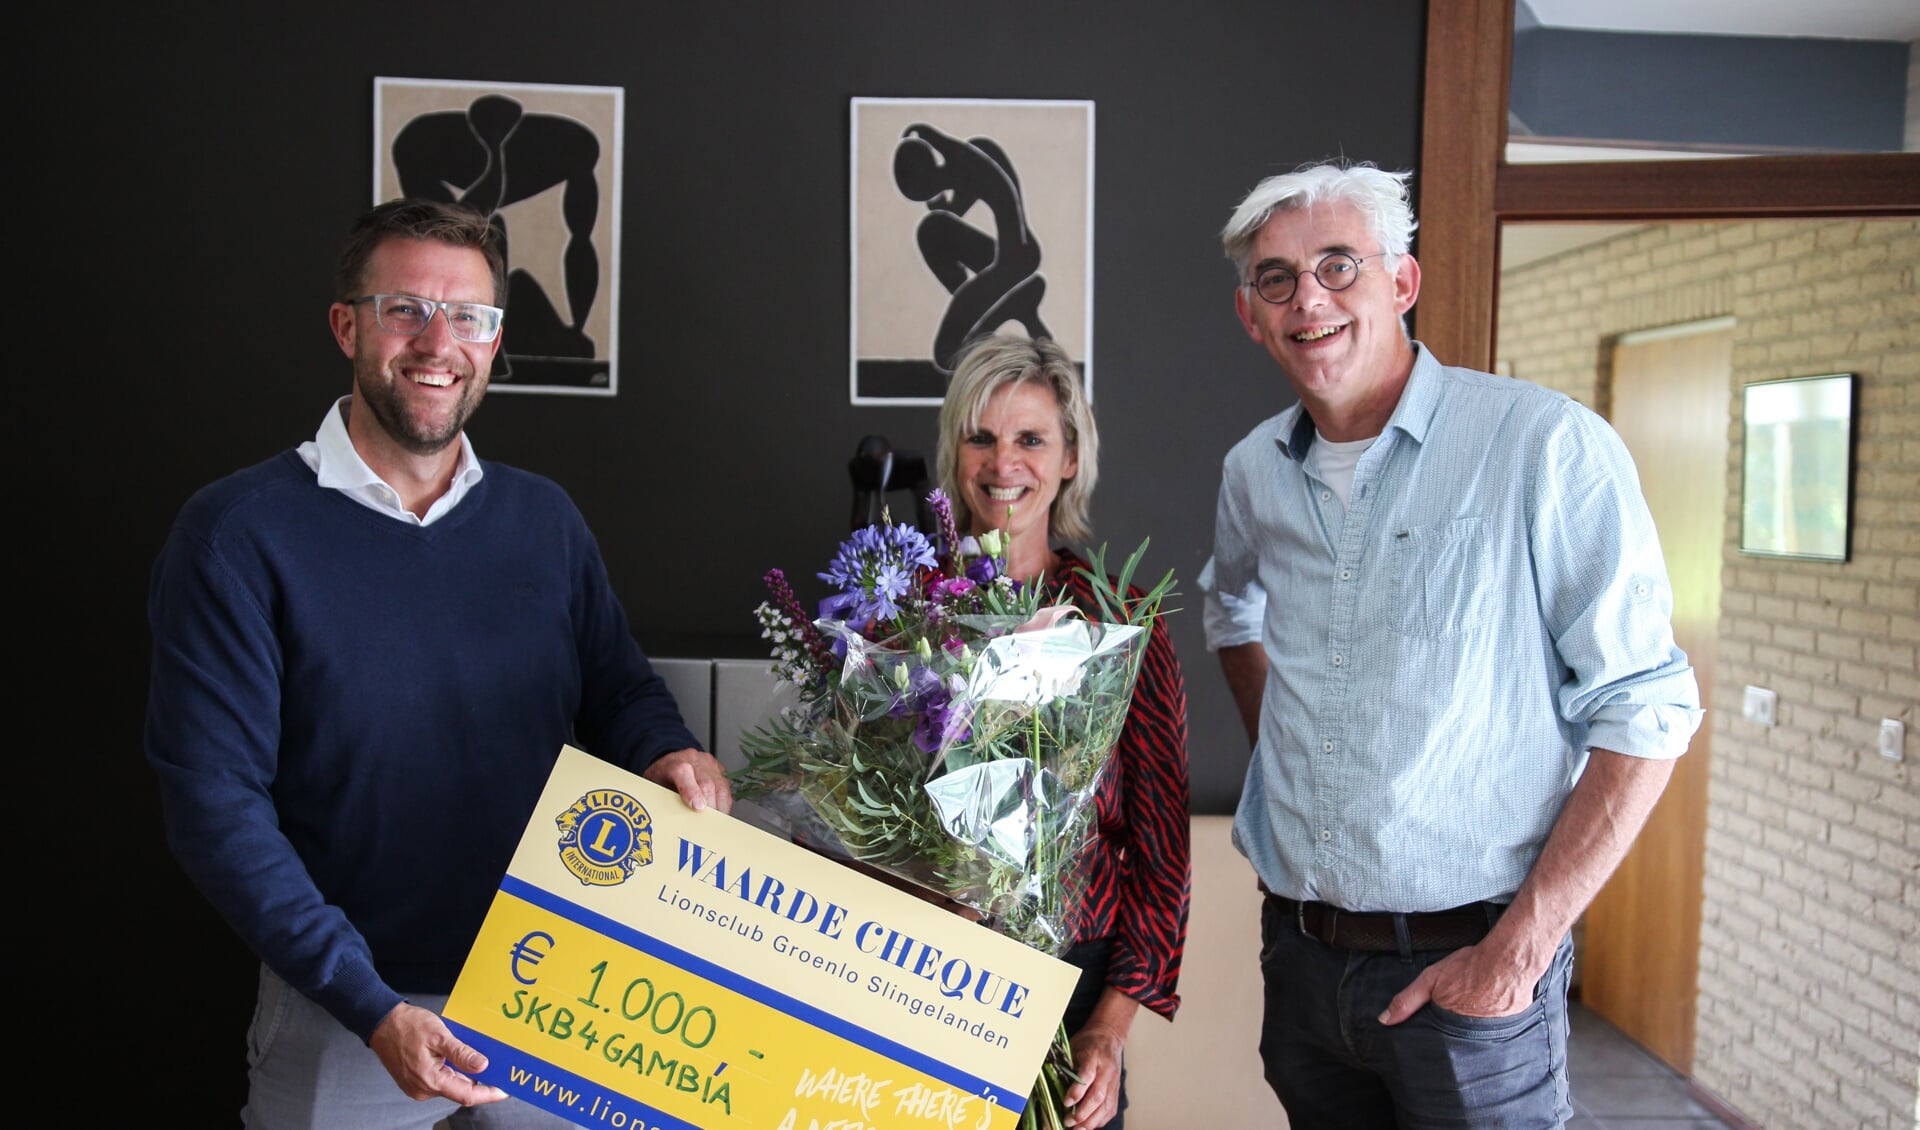 Carla Klein Breteler van SKB4Gambia (midden) krijgt de cheque behorend bij de Lions Award uitgereikt door president Maarten Reimes (links) en lid Theo Helmers (rechts) van de Lionsclub Groenlo-Slingelanden.